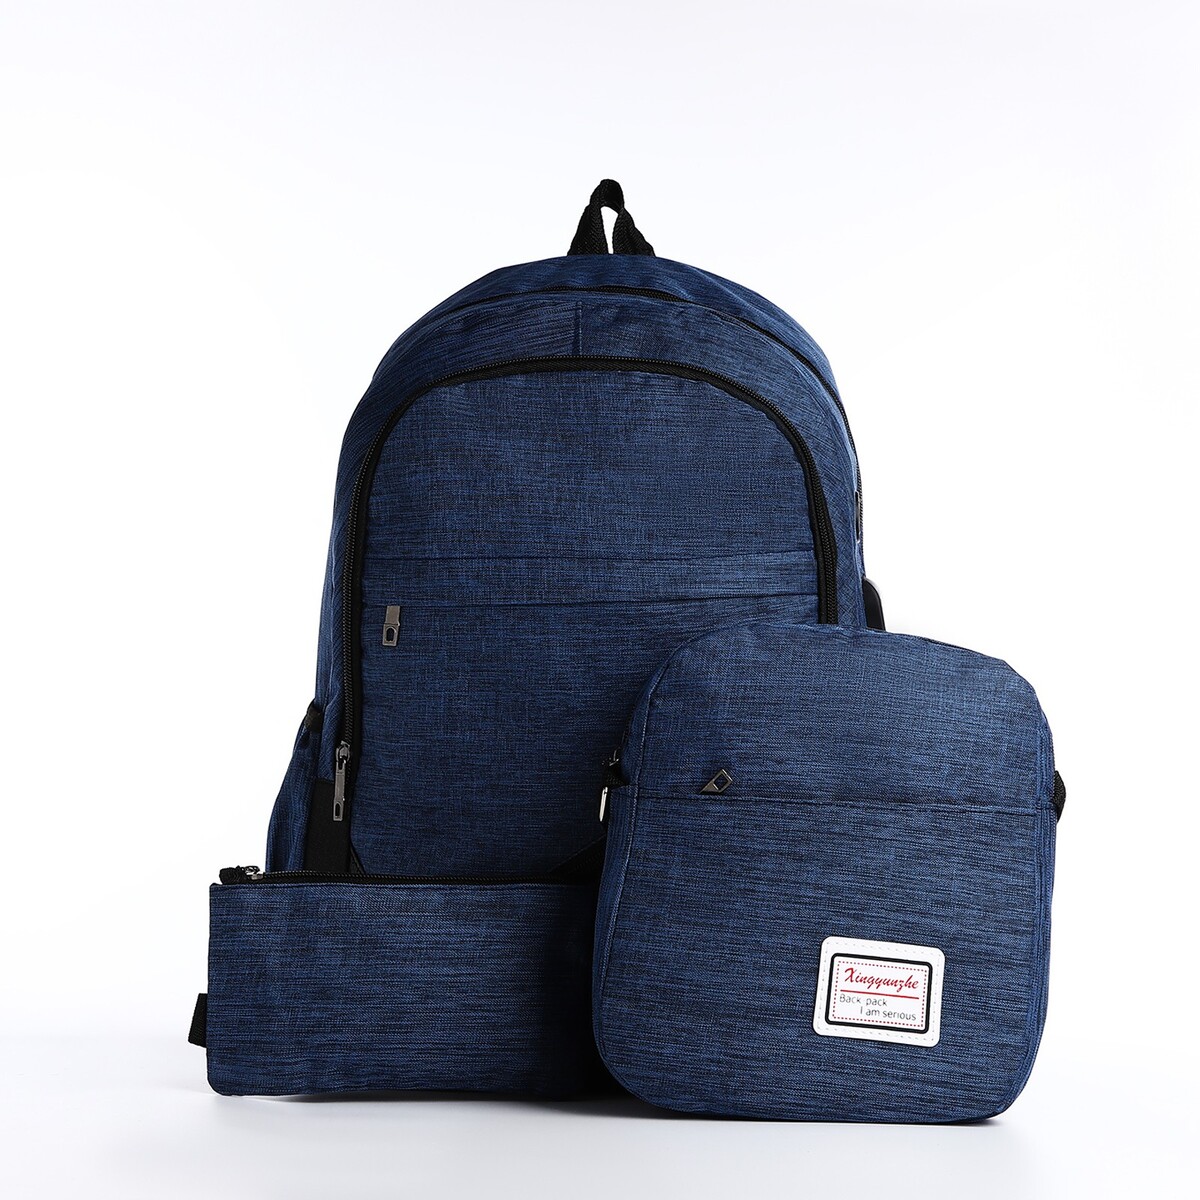 Рюкзак на молнии, с usb, 4 наружных кармана, сумка, пенал, цвет синий рюкзак на молнии с usb 4 наружных кармана сумка пенал синий